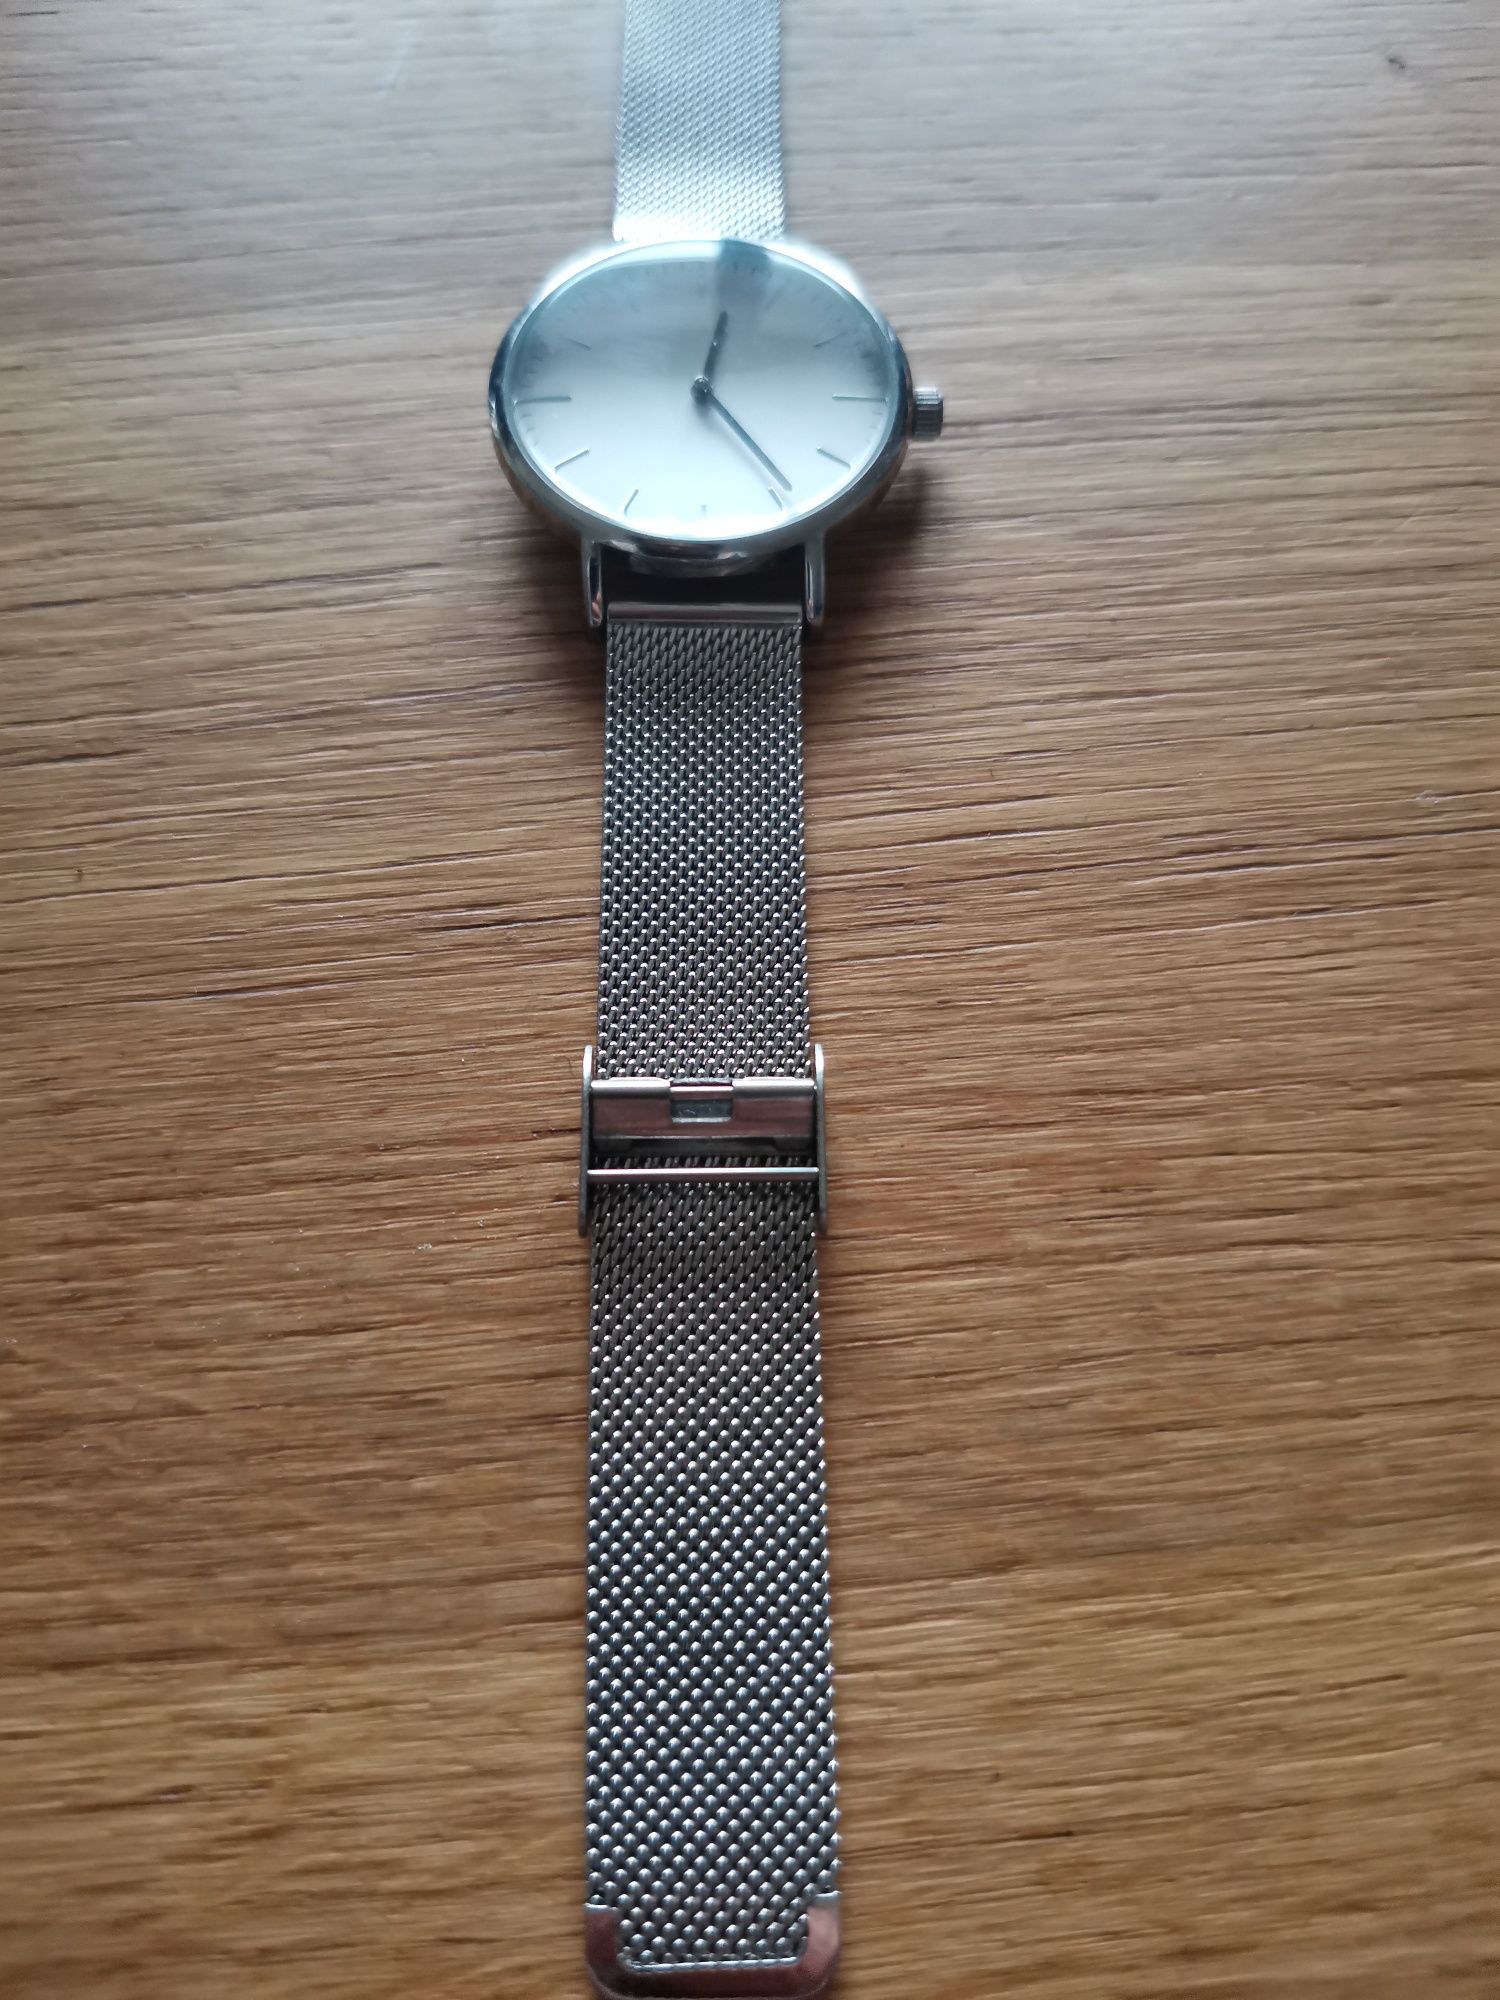 Damaki srebrny zegarek na bransolecie jak nowy 35mm